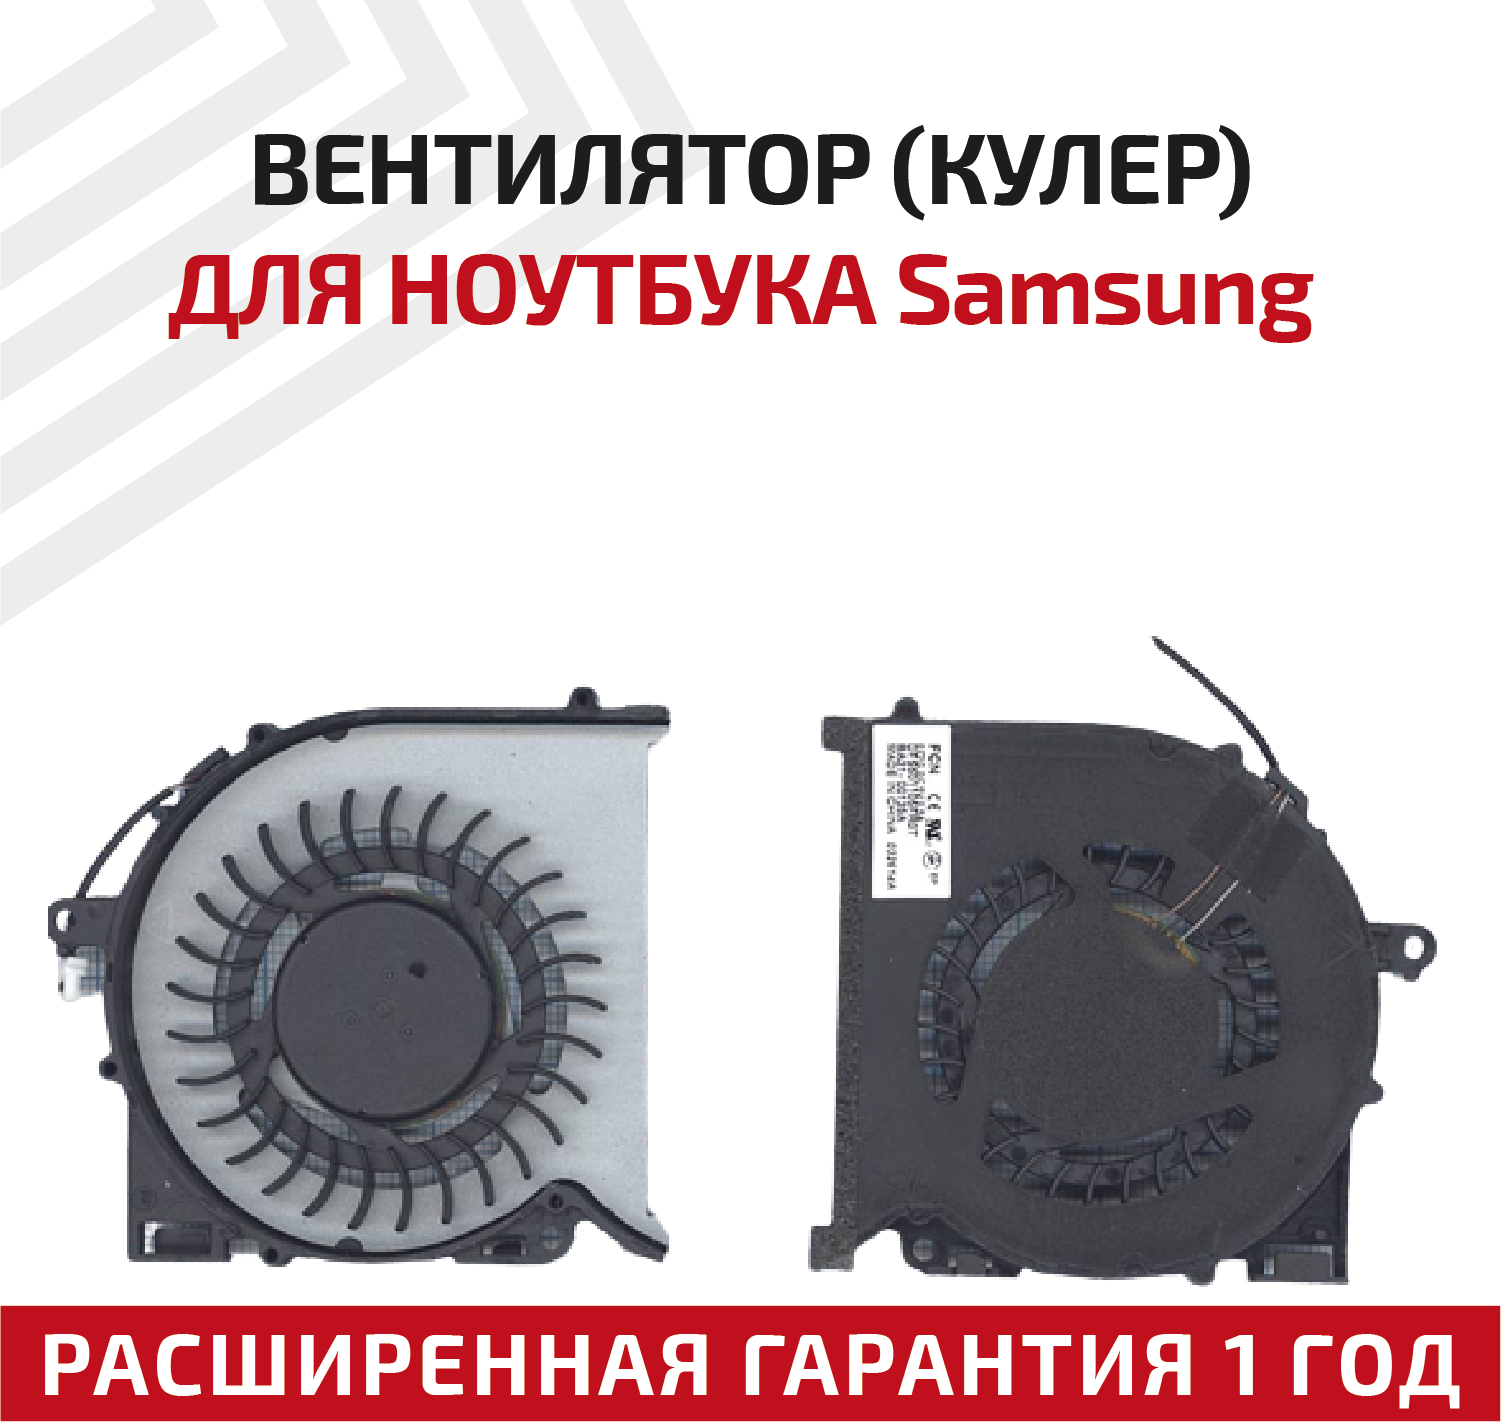 Вентилятор (кулер) для ноутбука Samsung NP670Z5E, NP680Z5E, NP770Z5E, NP780Z5E, NP870Z5E, NP870Z5G